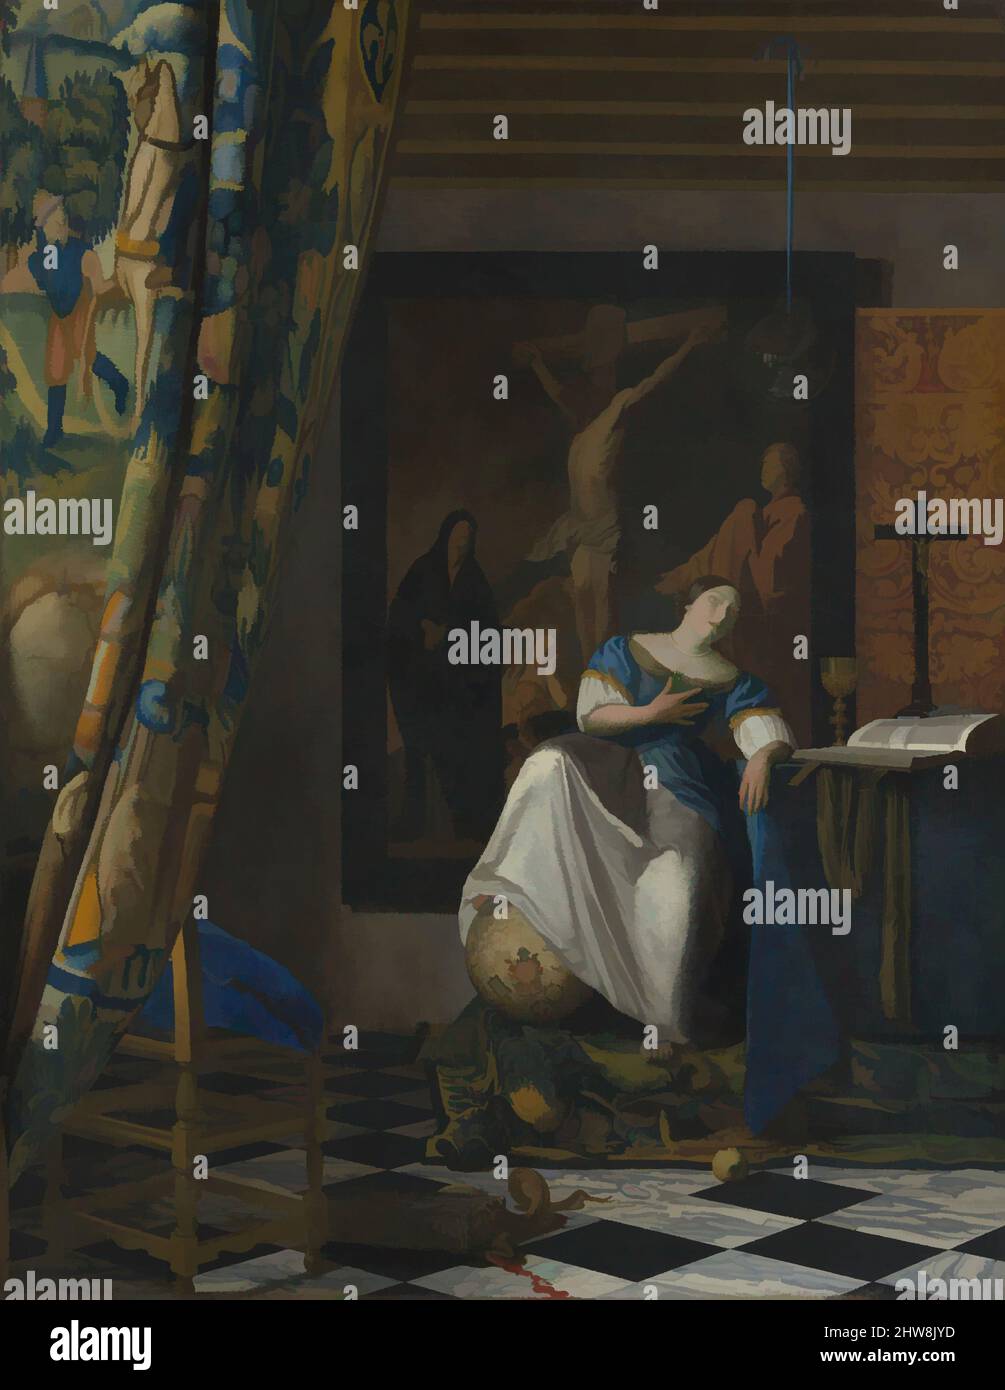 Kunst inspiriert von Allegorie des katholischen Glaubens, ca. 1670–72, Öl auf Leinwand, 45 x 35 Zoll (114,3 x 88,9 cm), Gemälde, Johannes Vermeer (Niederländisch, Delft 1632–1675 Delft), in diesem atypischen Gemälde hat der Künstler einen abstrakeren Stil verwendet, um dem intellektuellen Subjekt gerecht zu werden. Die gefühlvollen, klassischen Werke, die von Artotop mit einem Schuss Moderne modernisiert wurden. Formen, Farbe und Wert, auffällige visuelle Wirkung auf Kunst. Emotionen durch Freiheit von Kunstwerken auf zeitgemäße Weise. Eine zeitlose Botschaft, die eine wild kreative neue Richtung verfolgt. Künstler, die sich dem digitalen Medium zuwenden und die Artotop NFT erschaffen Stockfoto